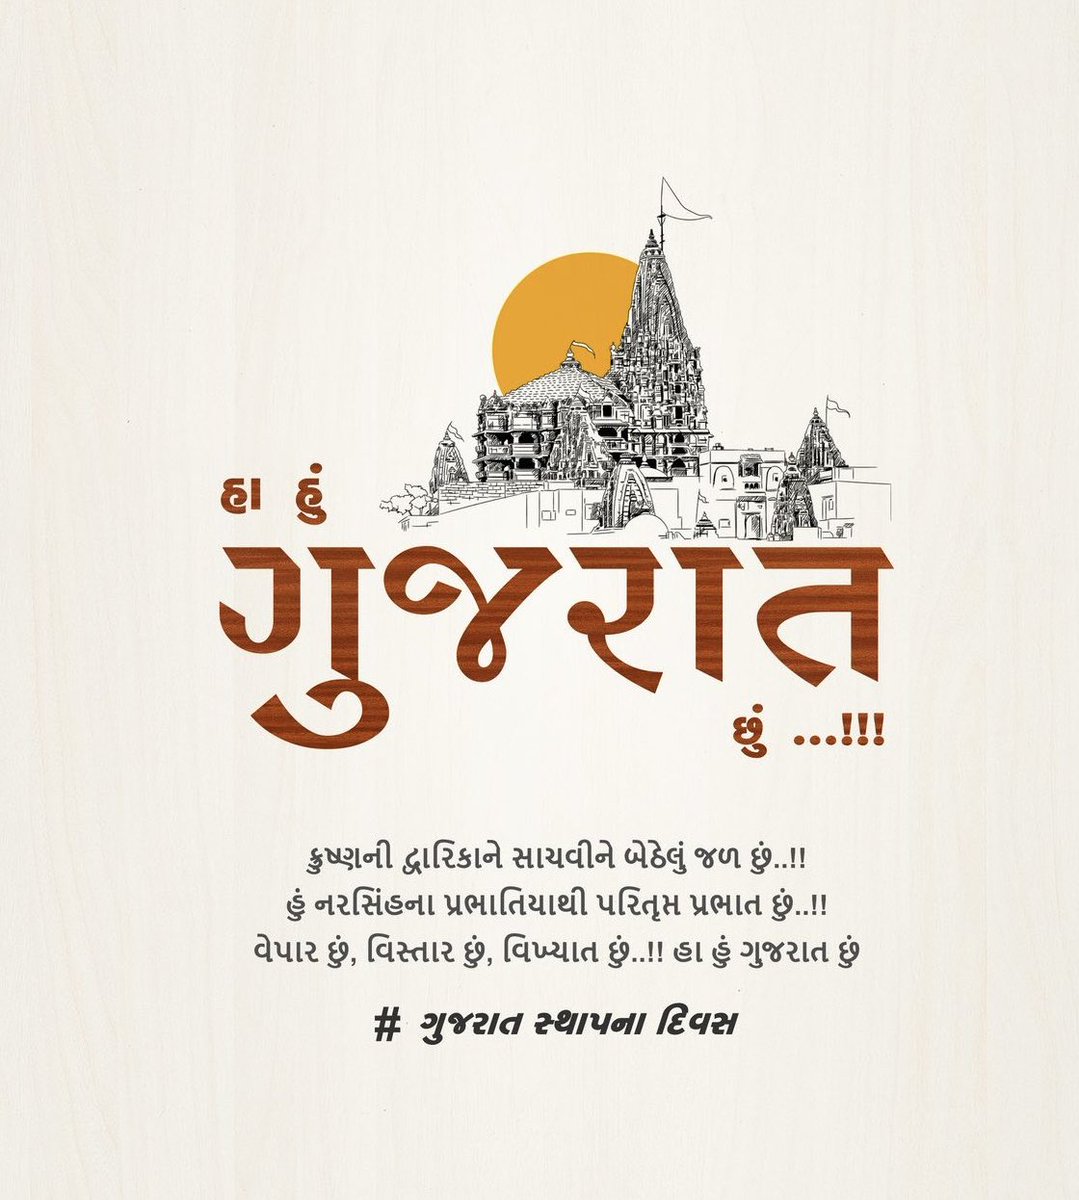 કૃષ્ણની દ્વારિકાને સાચવીને બેઠેલું જળ છું..!!! 
હું નરસિંહના પ્રભાતિયાથી પરિતૃપ્ત પ્રભાત છું..!!!
વેપાર છું, વિસ્તાર છું, વિખ્યાત છું..!!!

હા હું ગુજરાત છું..!🩶

#ગુજરાત #ગુજરાતી
#સ્થાપનાદિવસ
#foundationday